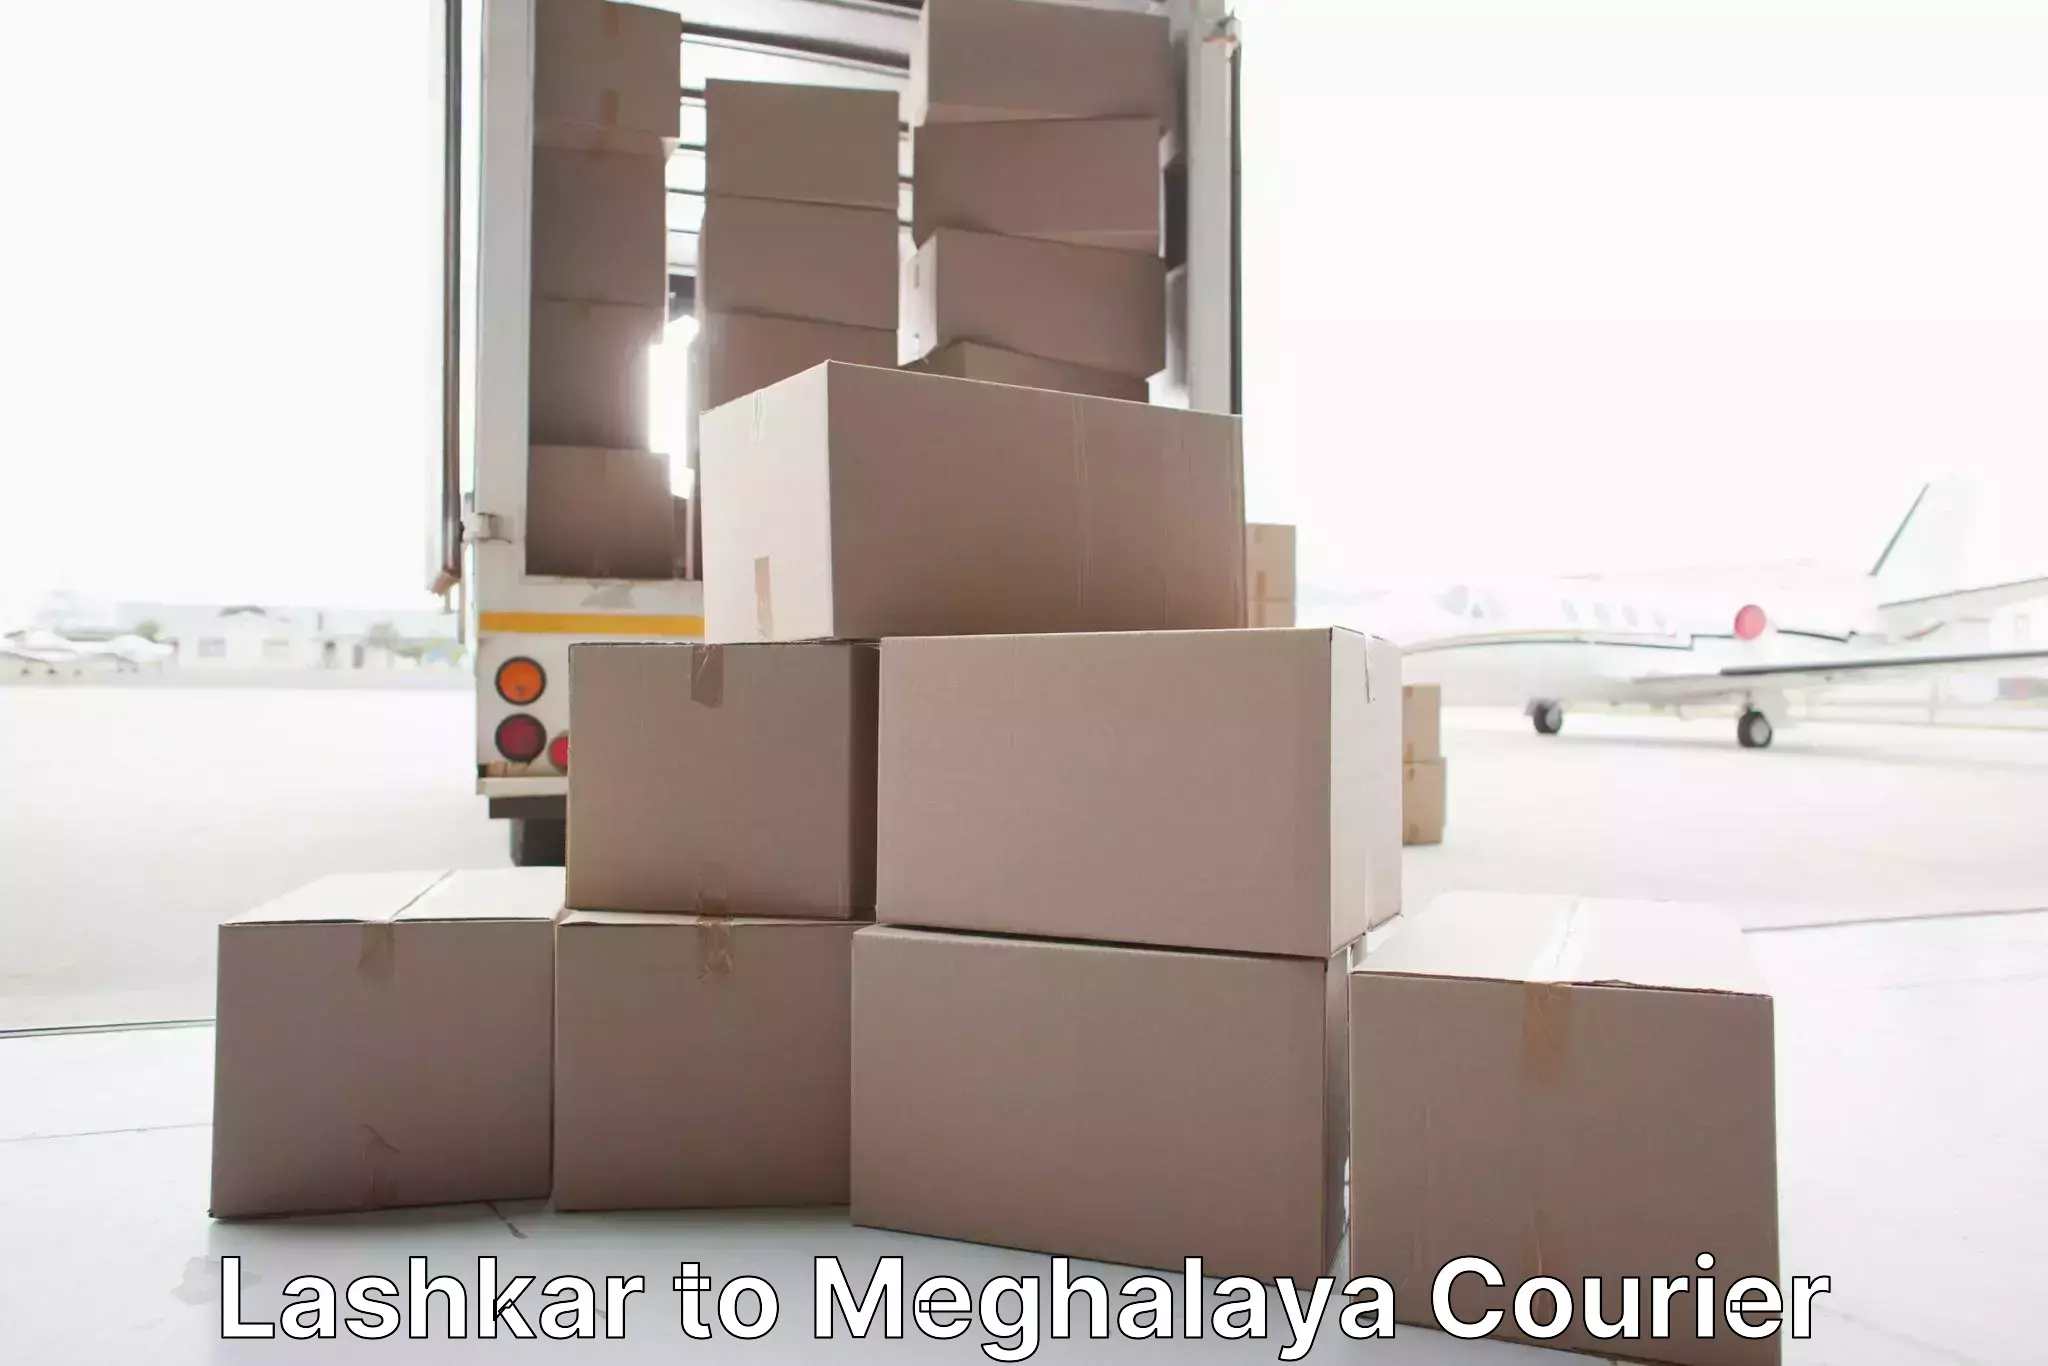 Home goods moving company Lashkar to Meghalaya